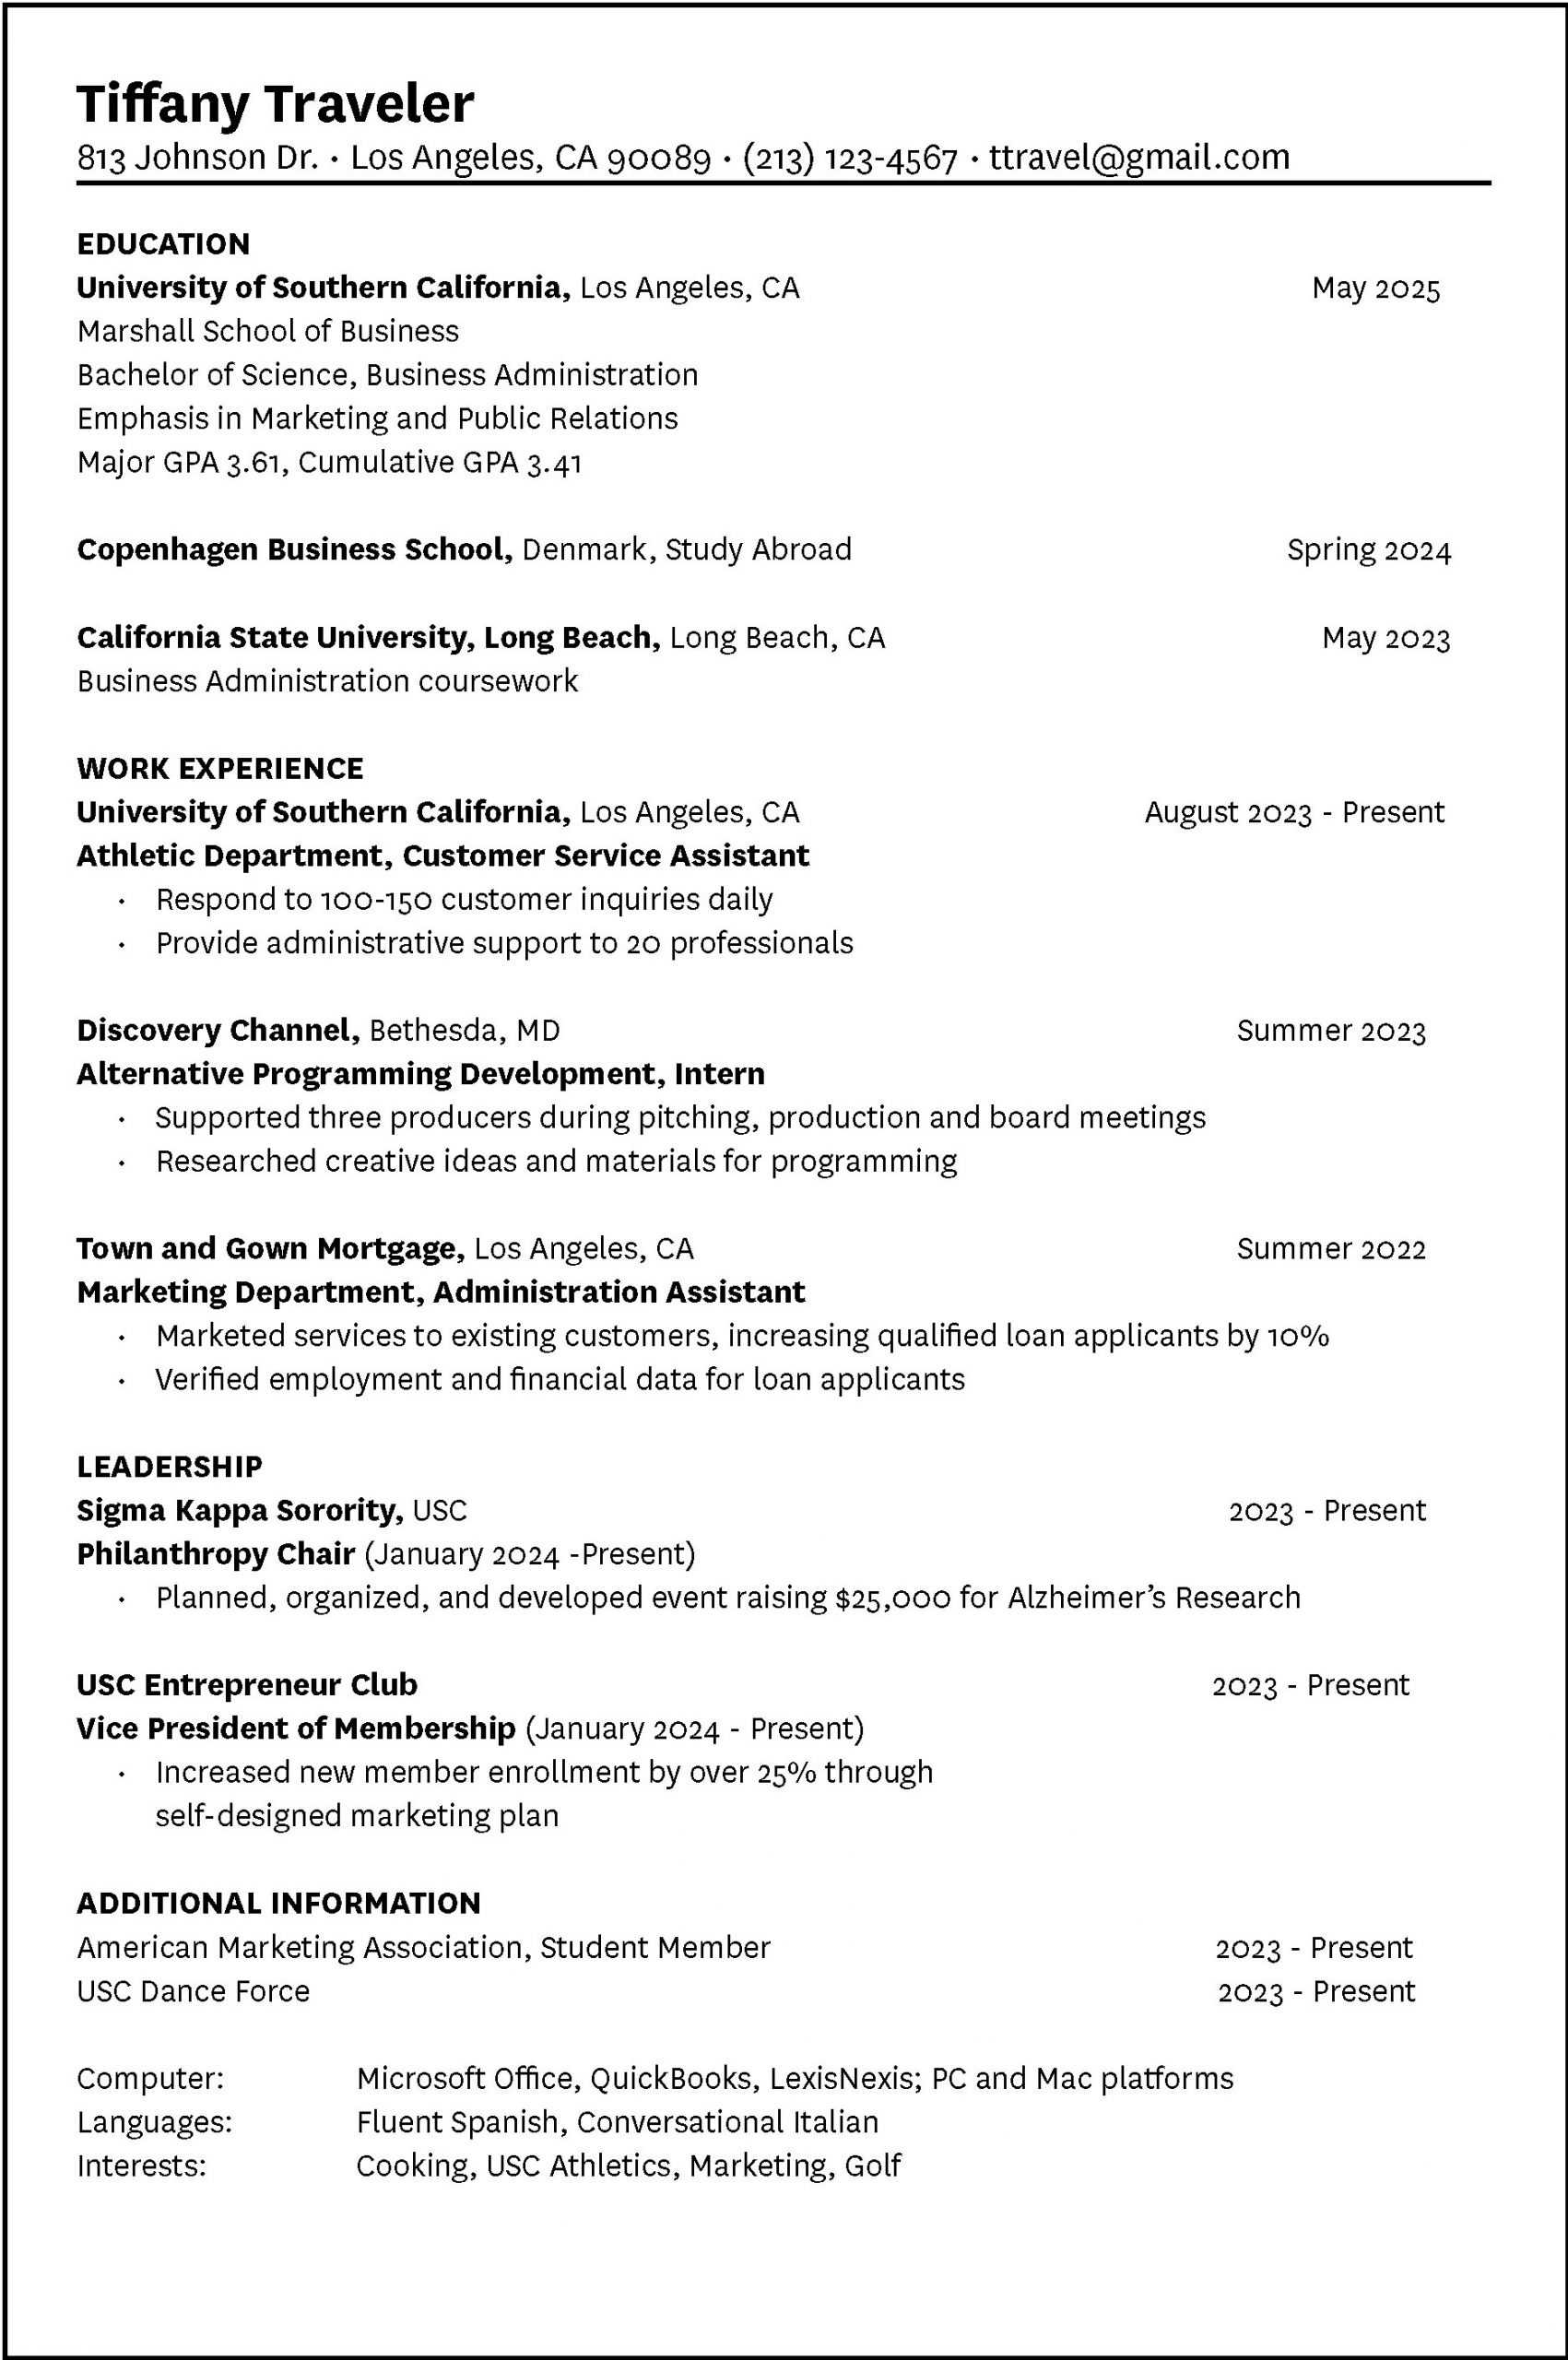 umd career center resume review